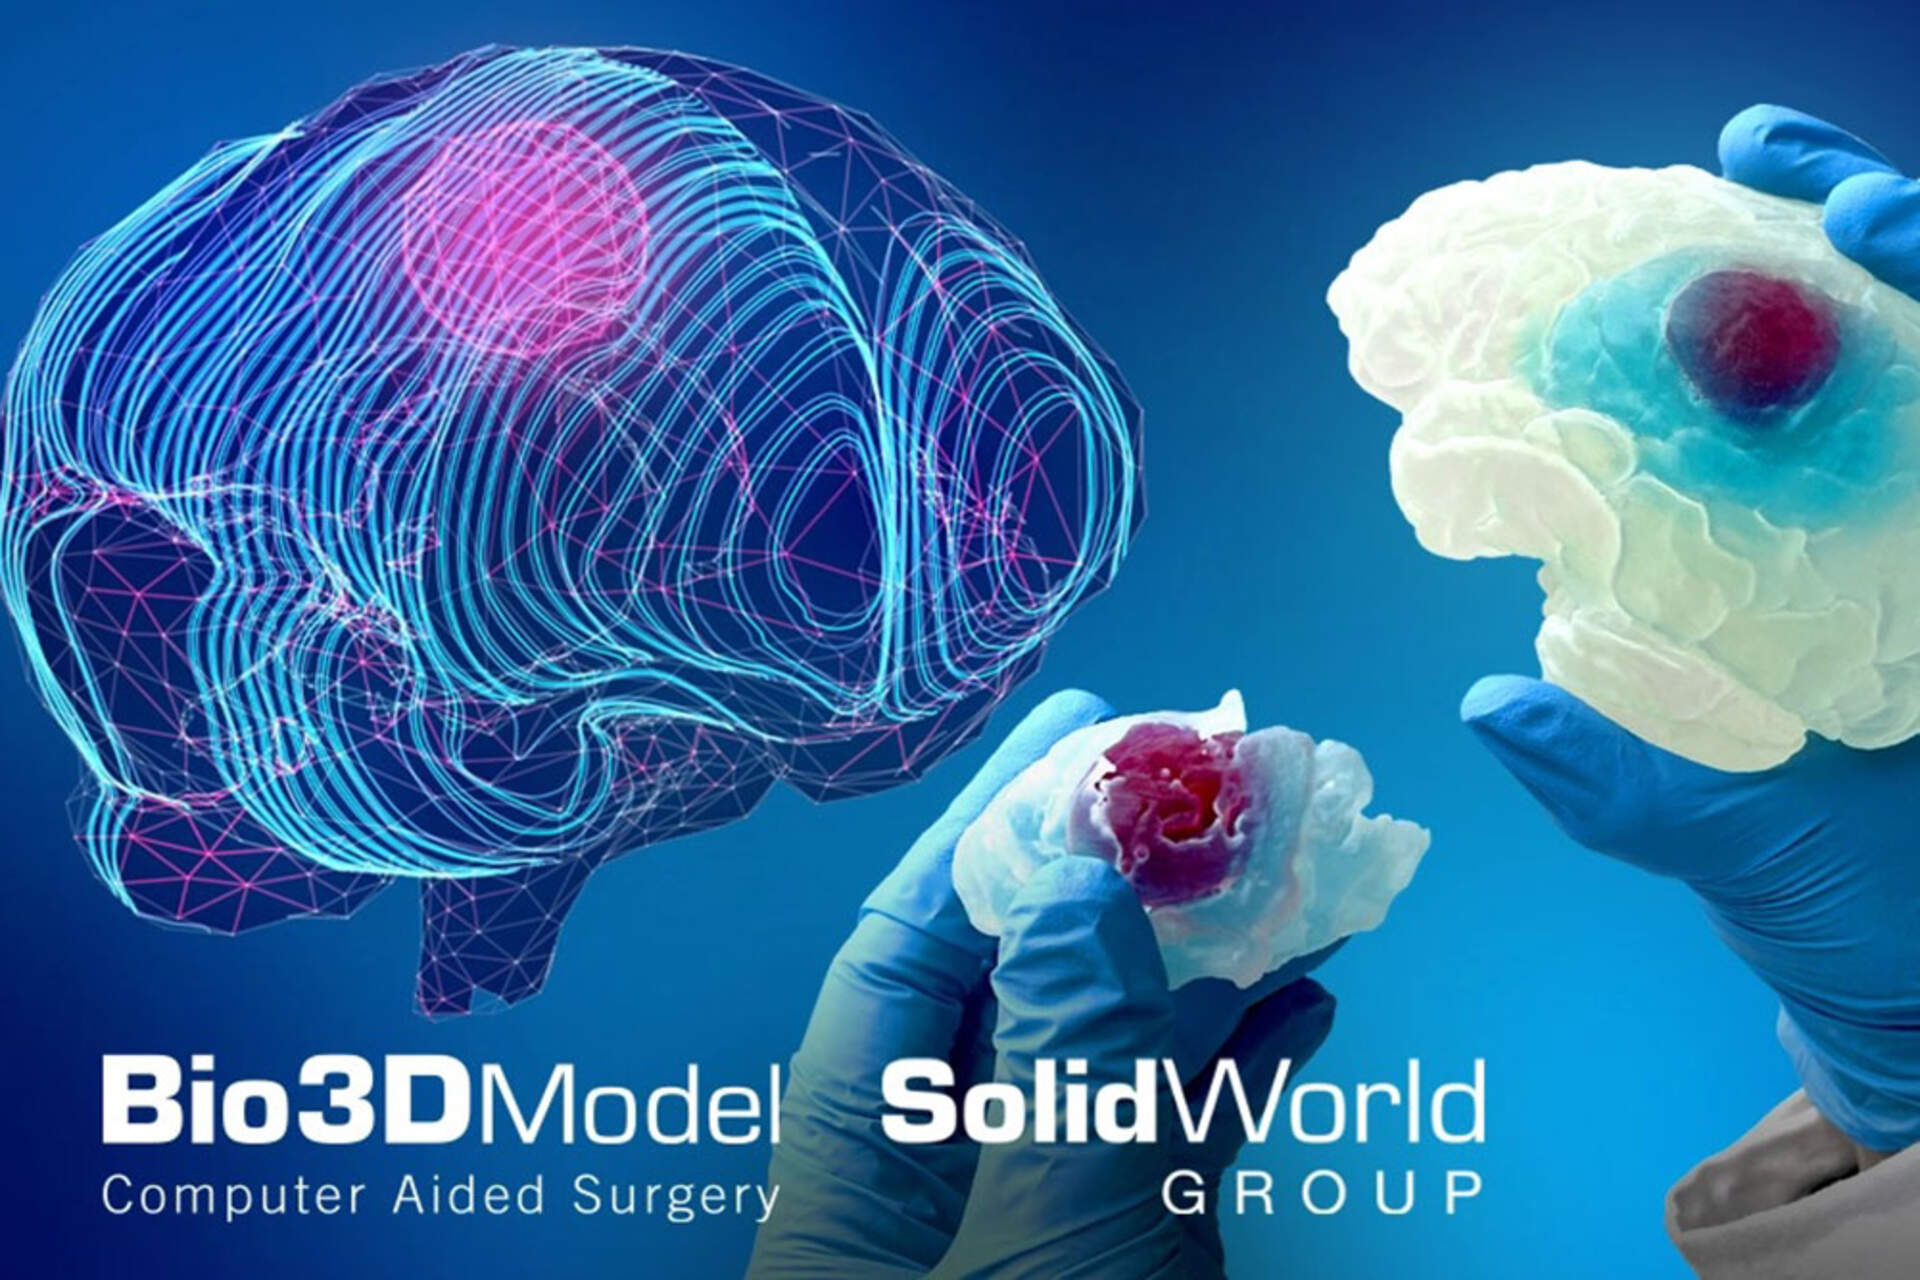 Ανθρώπινος εγκέφαλος: Μια βασική απεικόνιση του εγκεφάλου που έχει προσβληθεί από όγκο 3D που εκτυπώθηκε από την SolidWorld Group